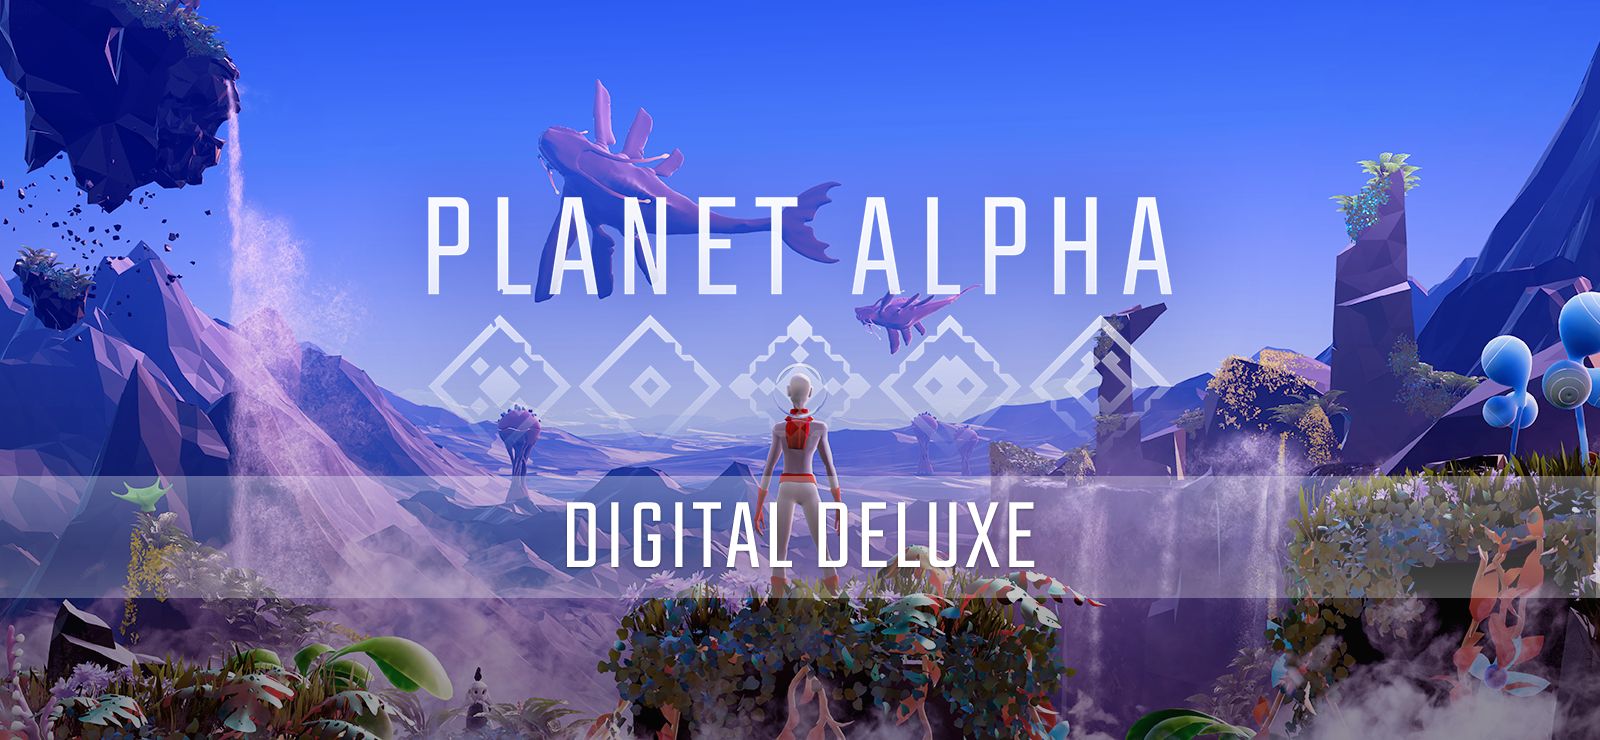 PLANET ALPHA Digital Deluxe